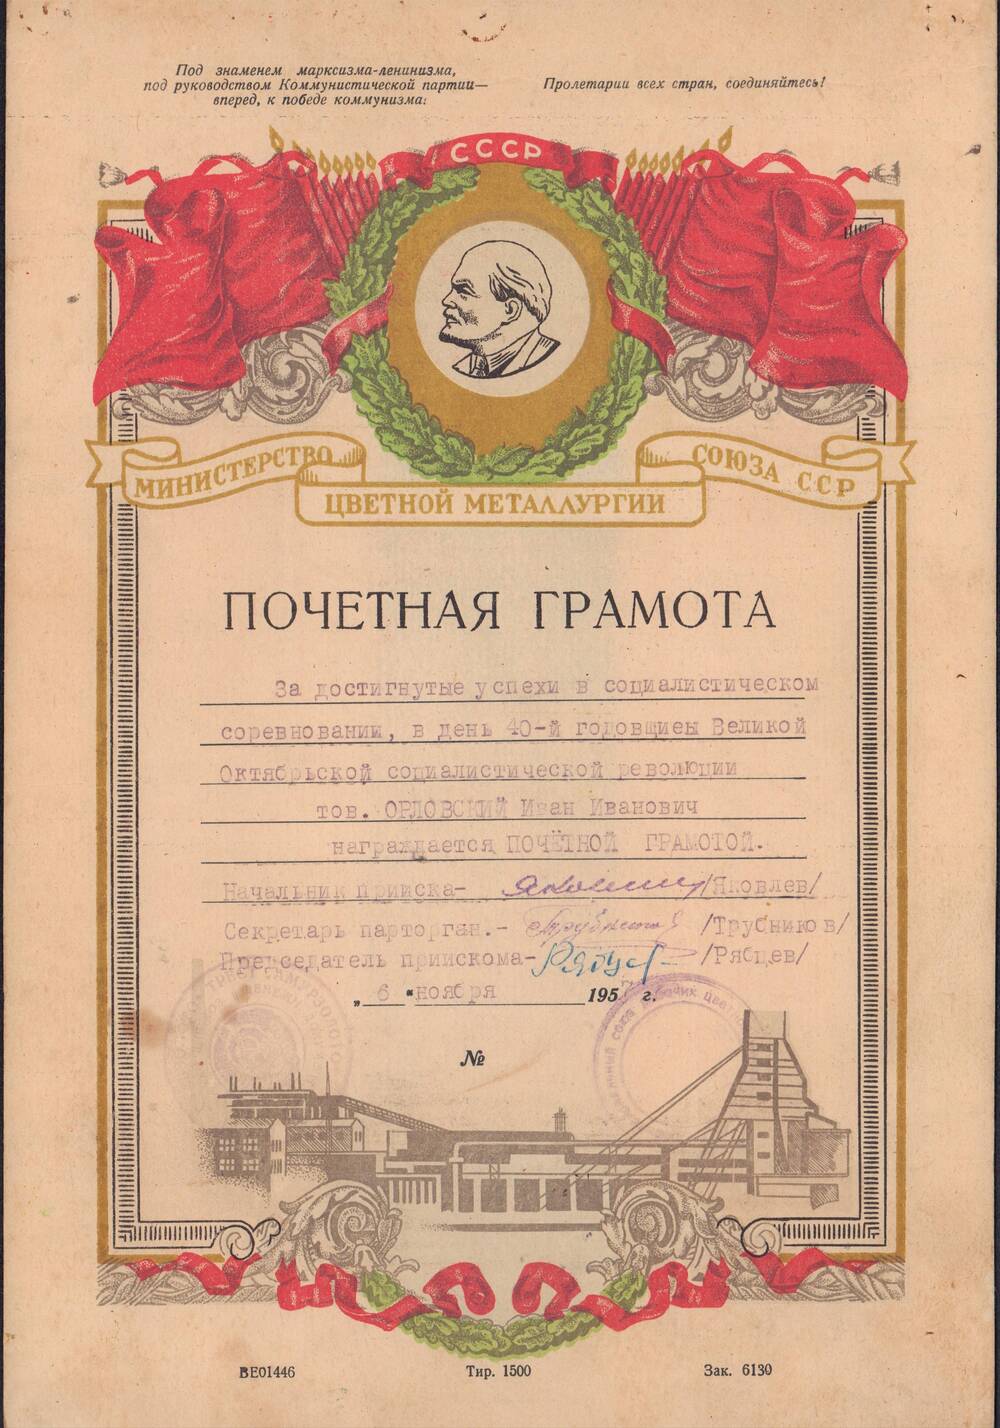 Грамота почетная Орловского И.И. за достигнутые успехи в социалистическом соревновании от 6 ноября 1957 года.